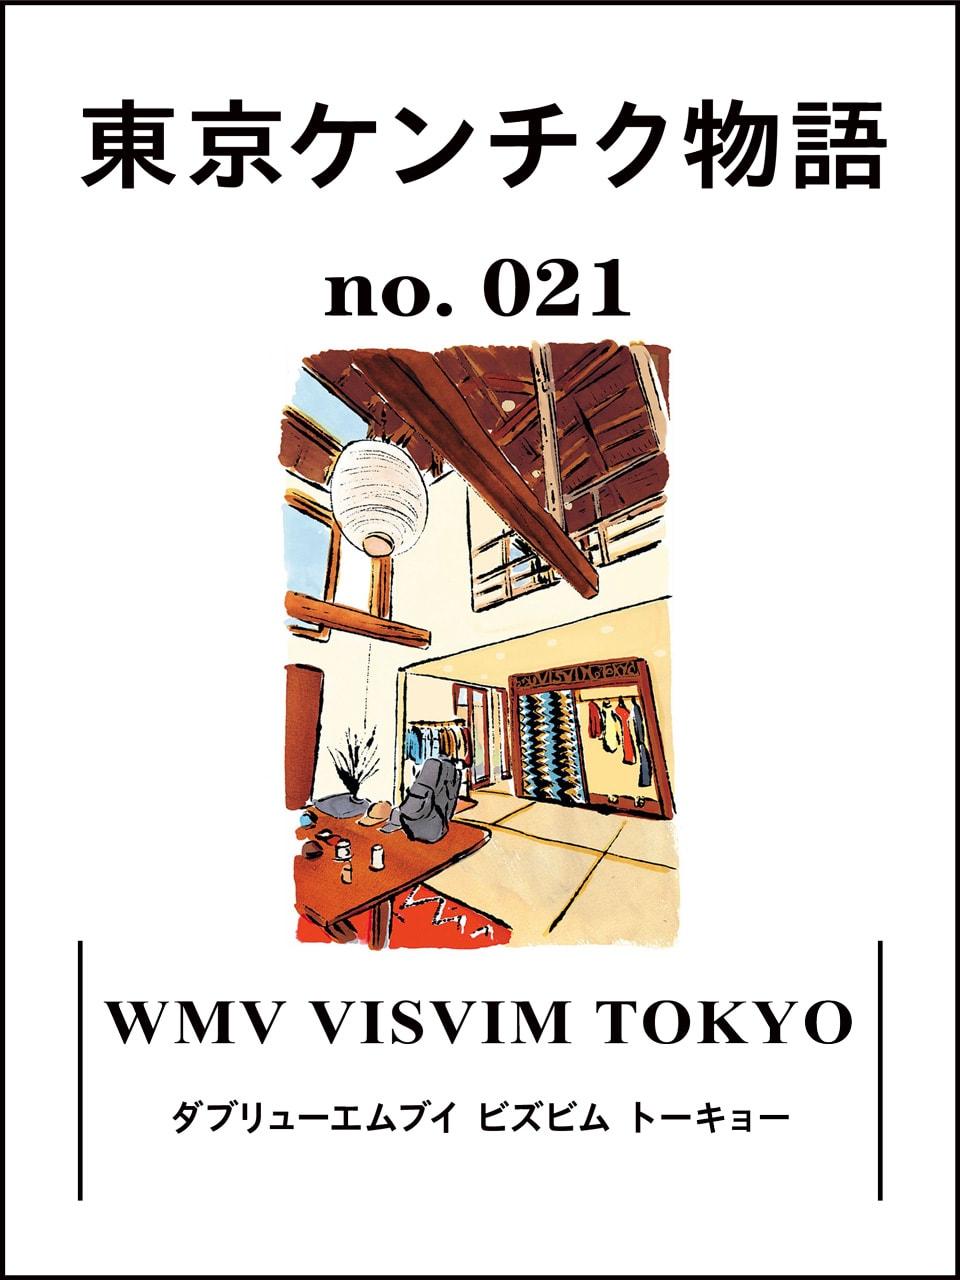 中目黒の古い一軒家をリノベーション「WMV VISVIM TOKYO」：東京ケンチク物語 vol.21